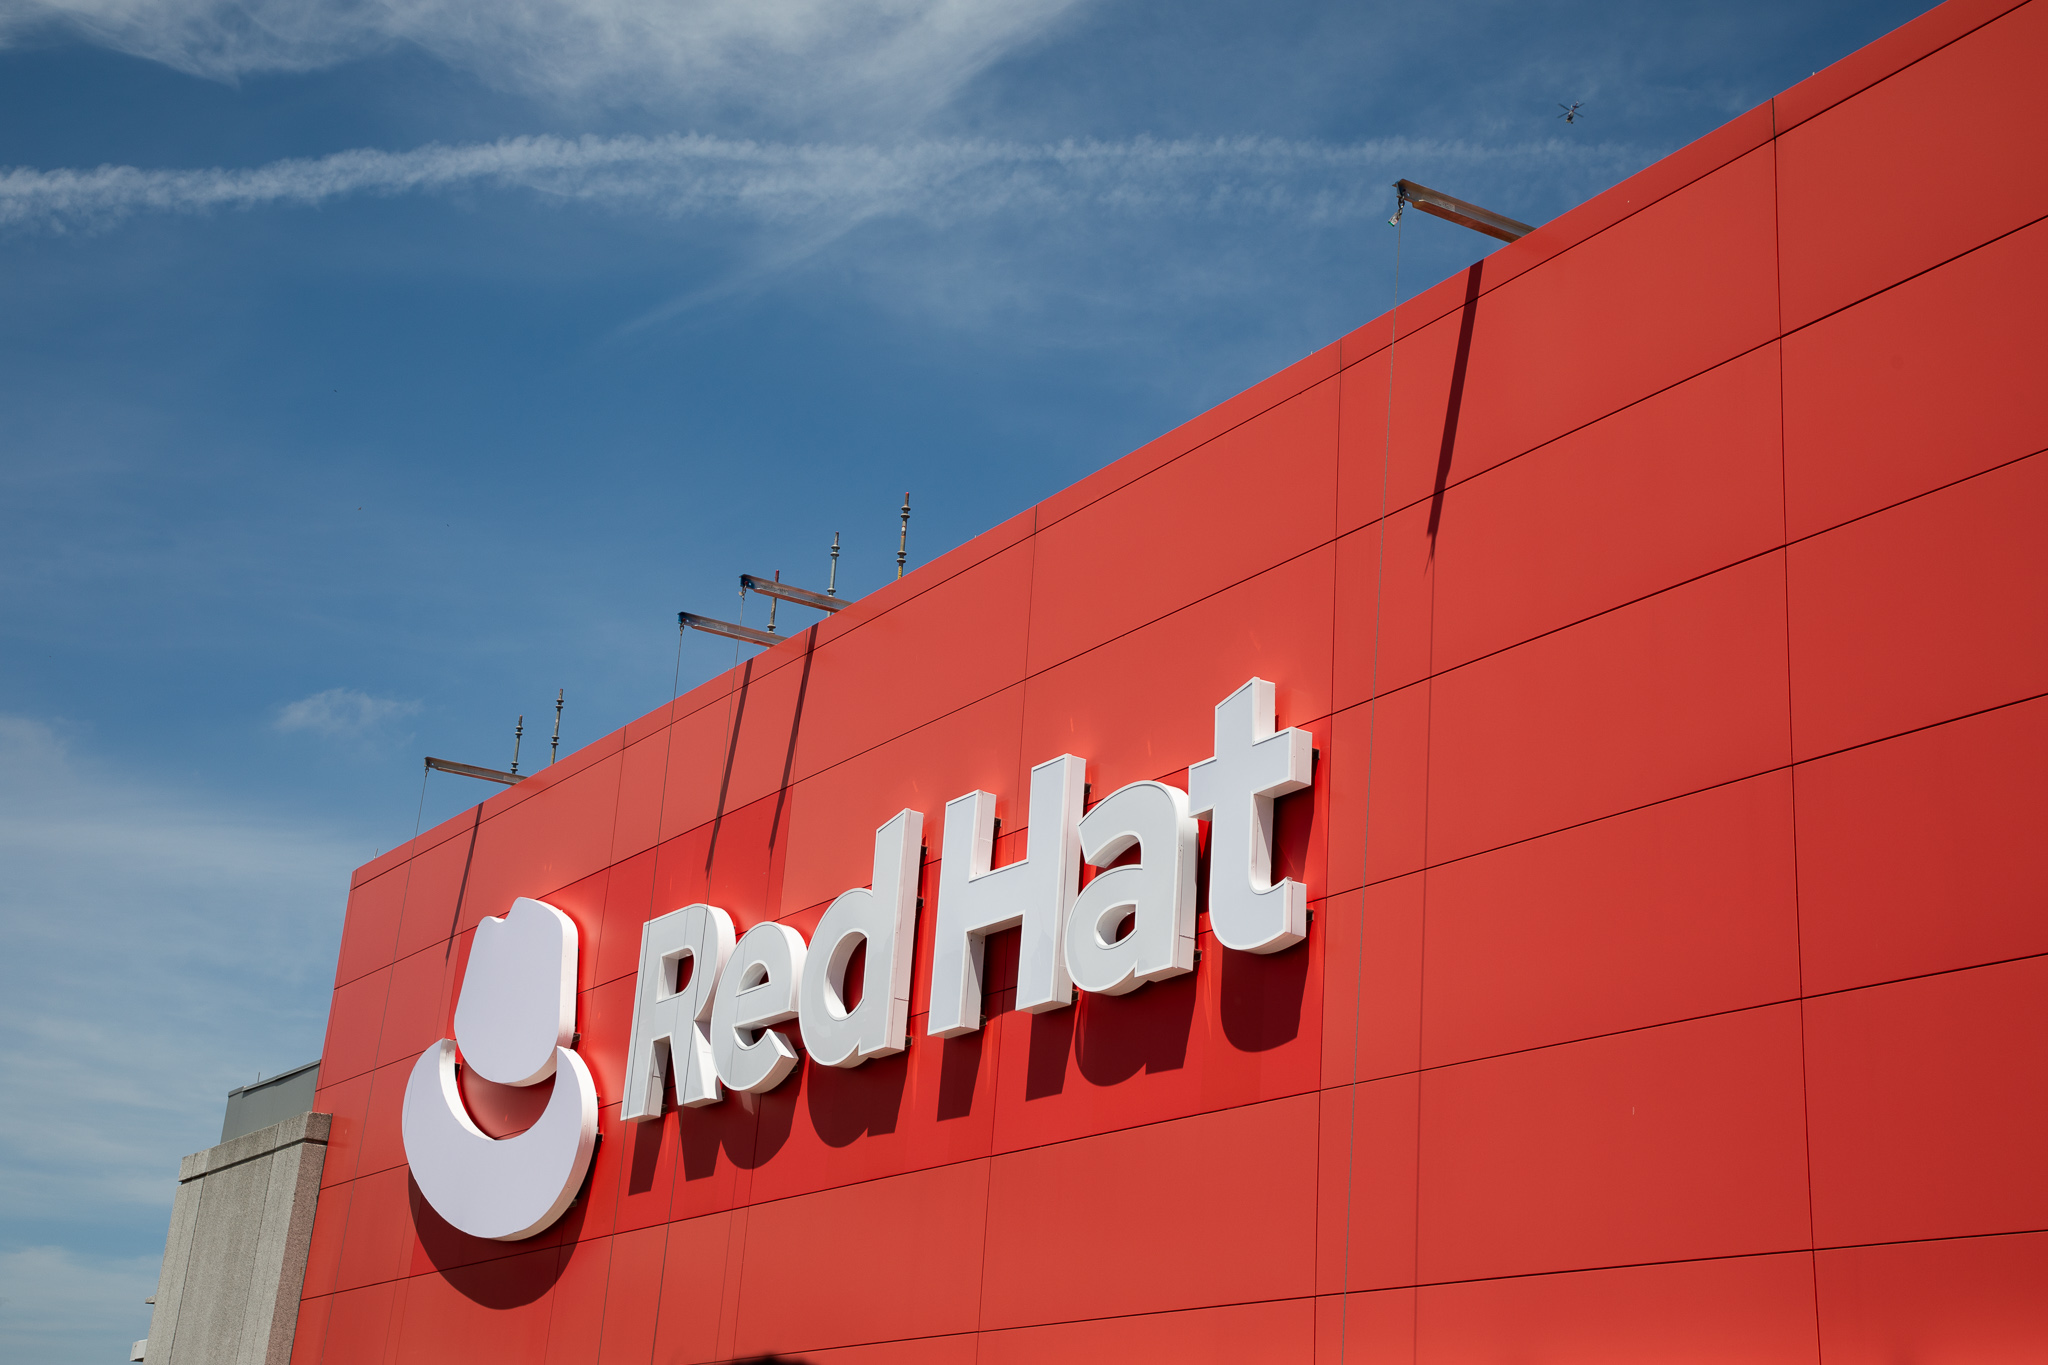 Red Hat suma 30 años de transformar organizaciones con el poder del código abierto